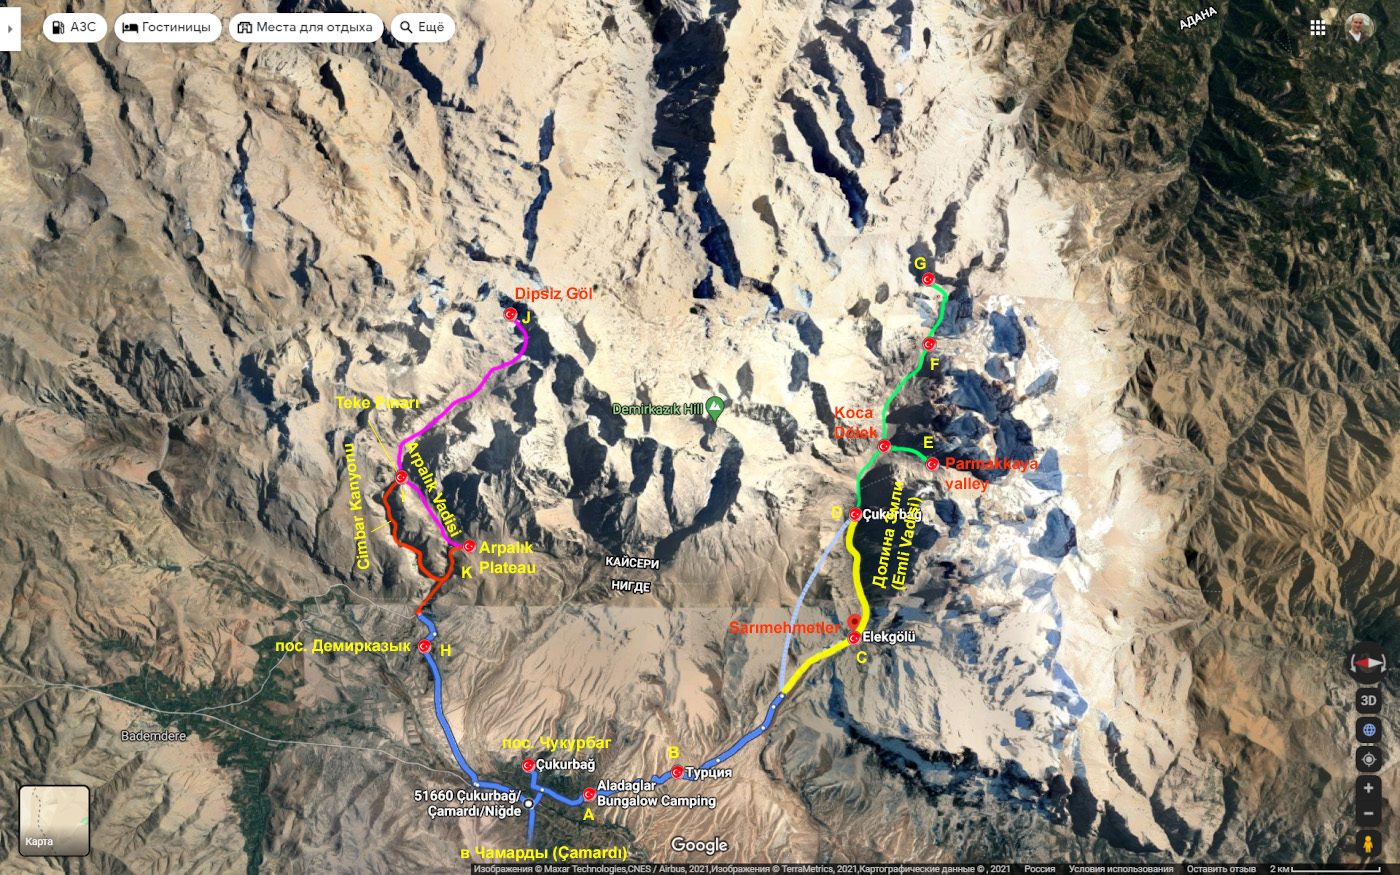 36. Карта со схемой маршрутов для пеших походов по горам Аладаглар одним днем. Сюда можно приехать отдыхать по пути из Анталии или Алании в Каппадокию.